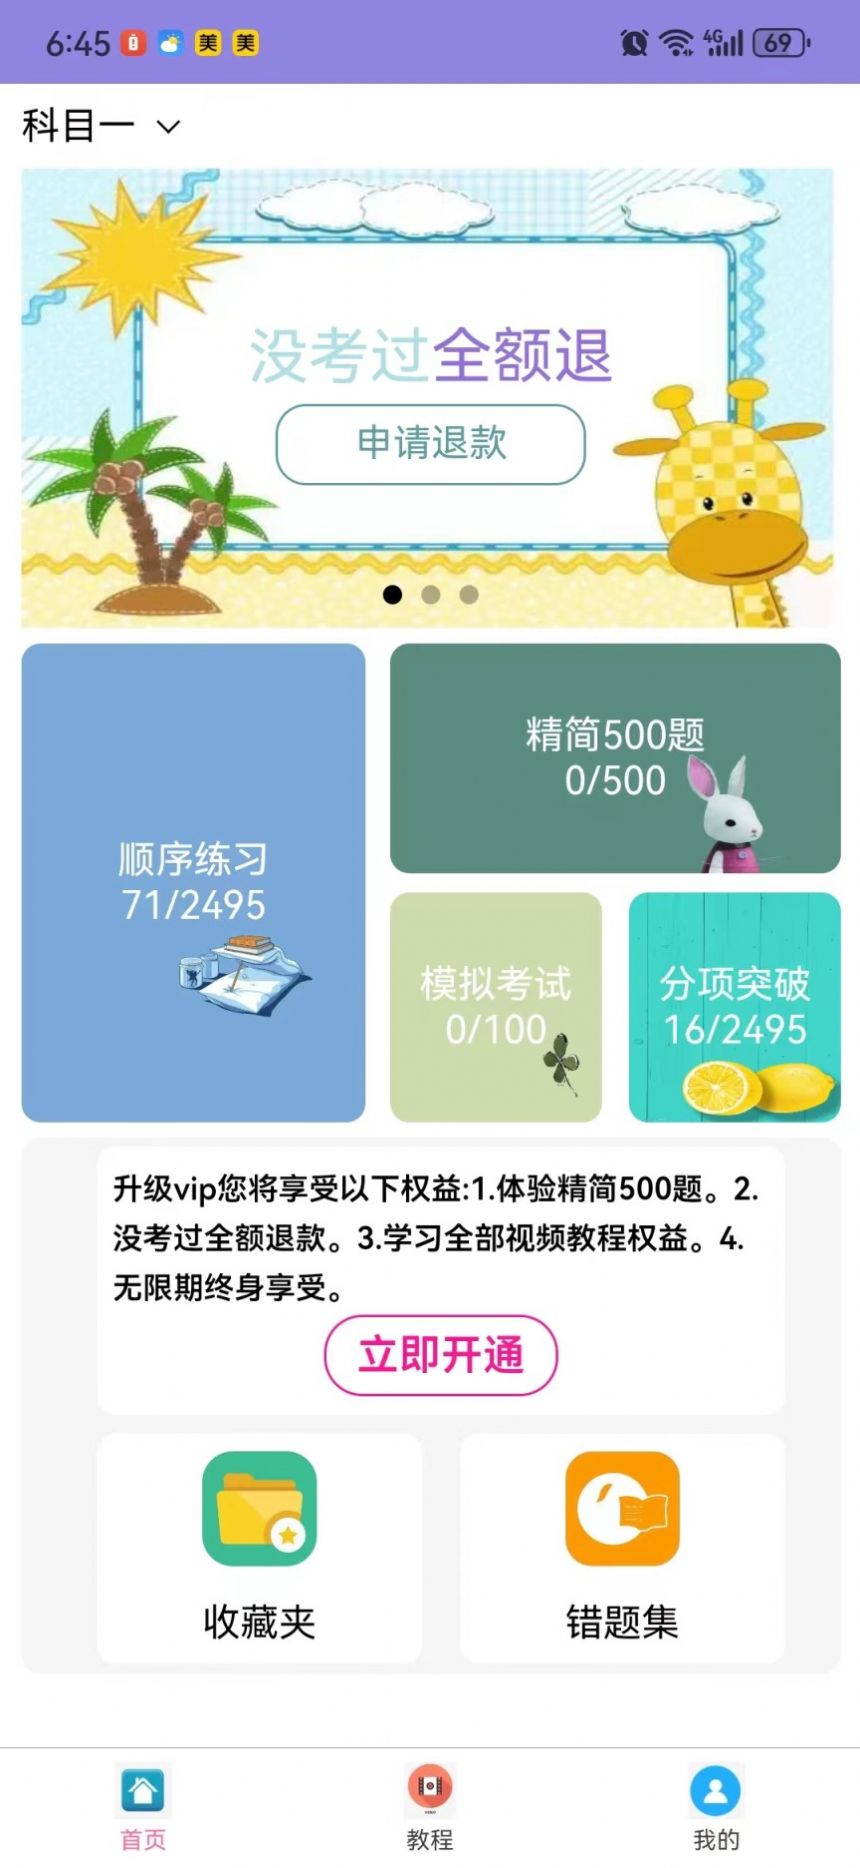 葵花驾考宝典app手机版 v1.0.1